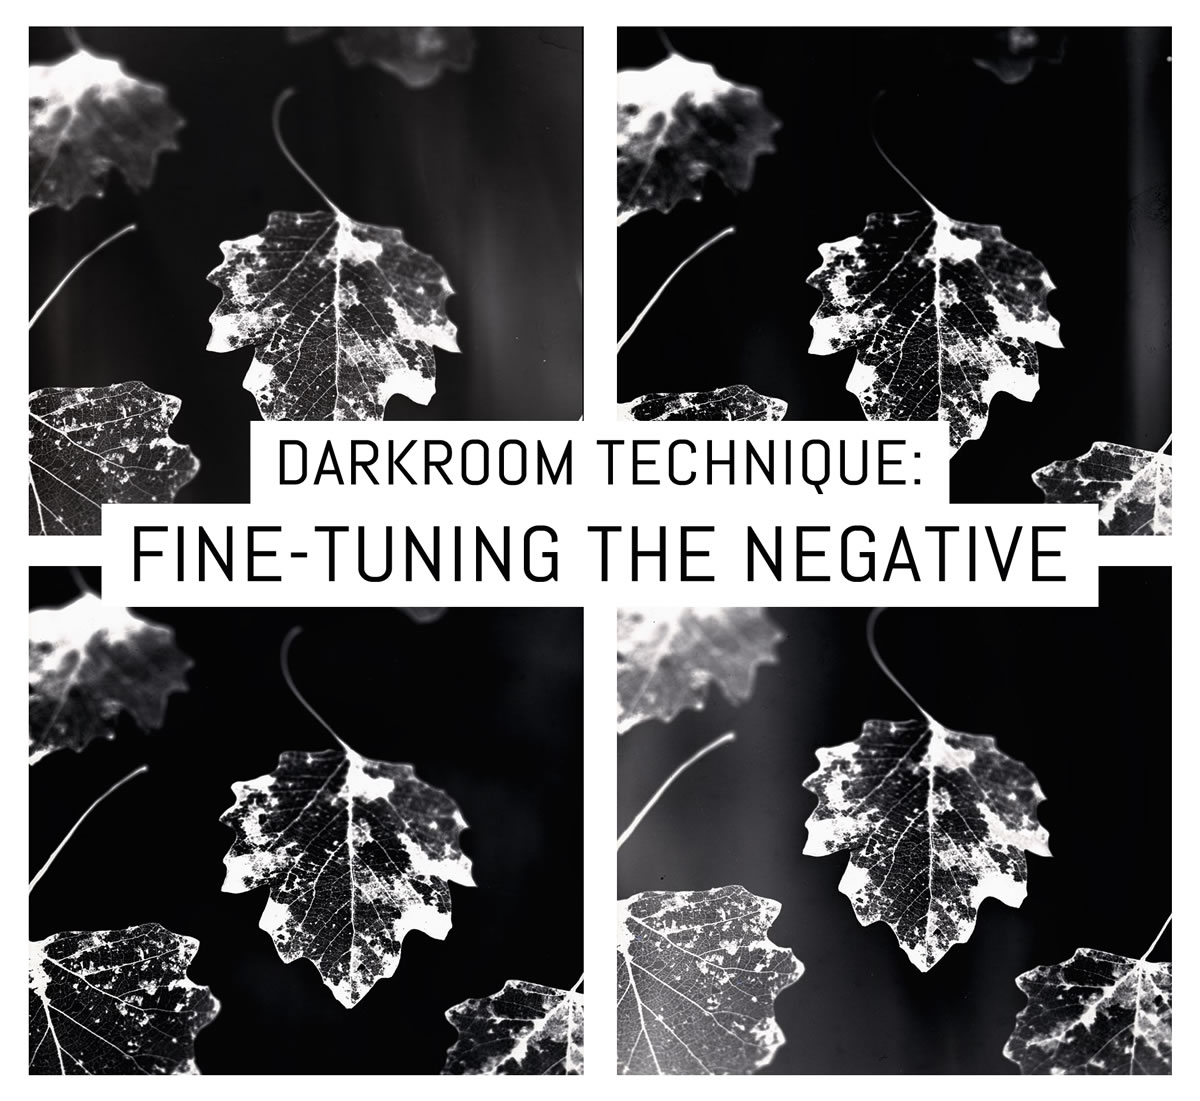 Darkroom technique: fine-tuning the negative